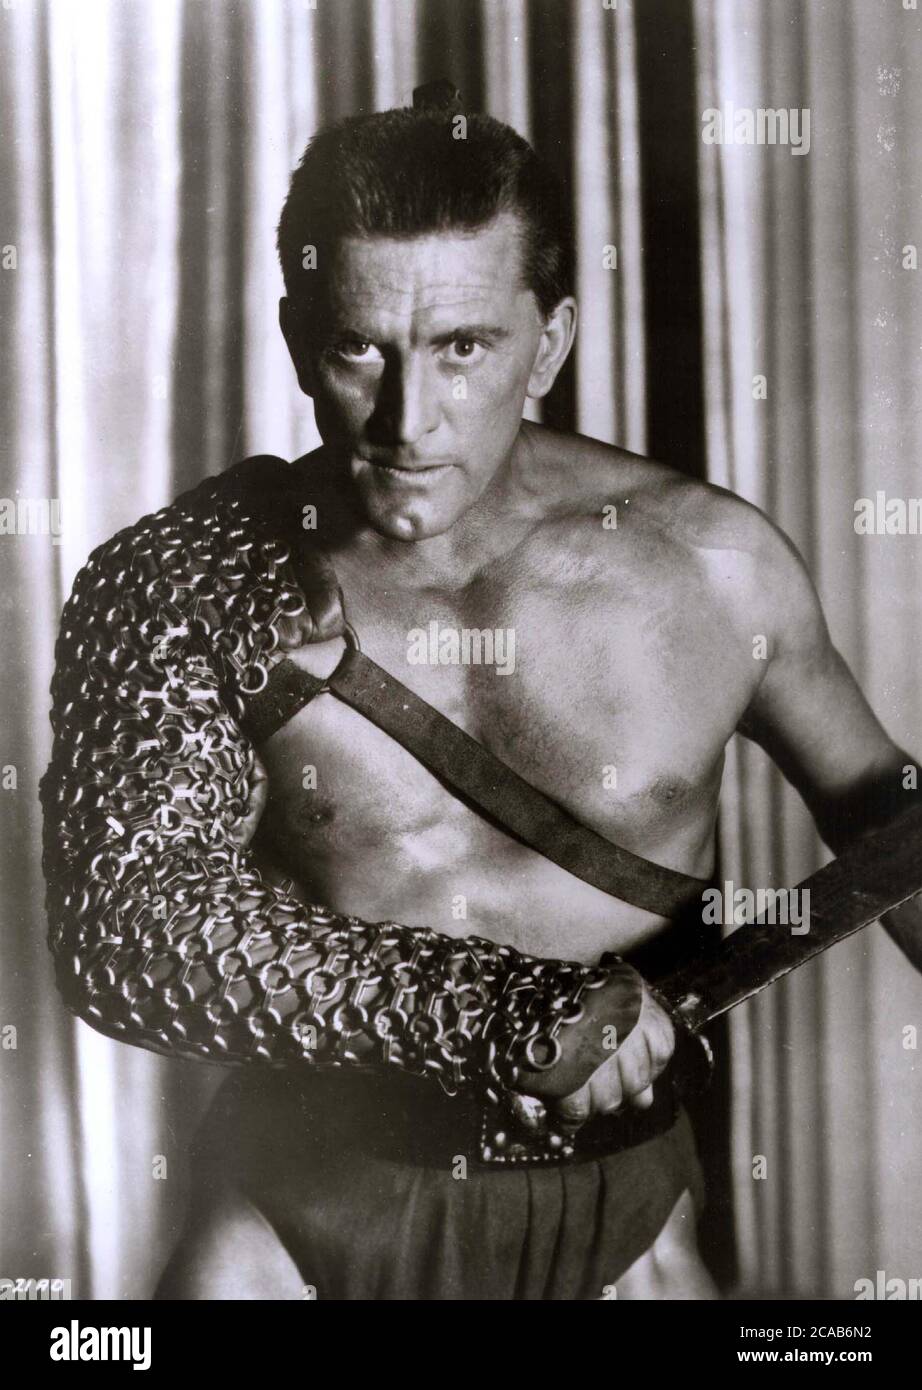 La película sigue siendo del actor estadounidense Kirk Douglas en la película de Hollywood de 1960 'Spartacus'. Douglas nació en 1918 Foto de stock